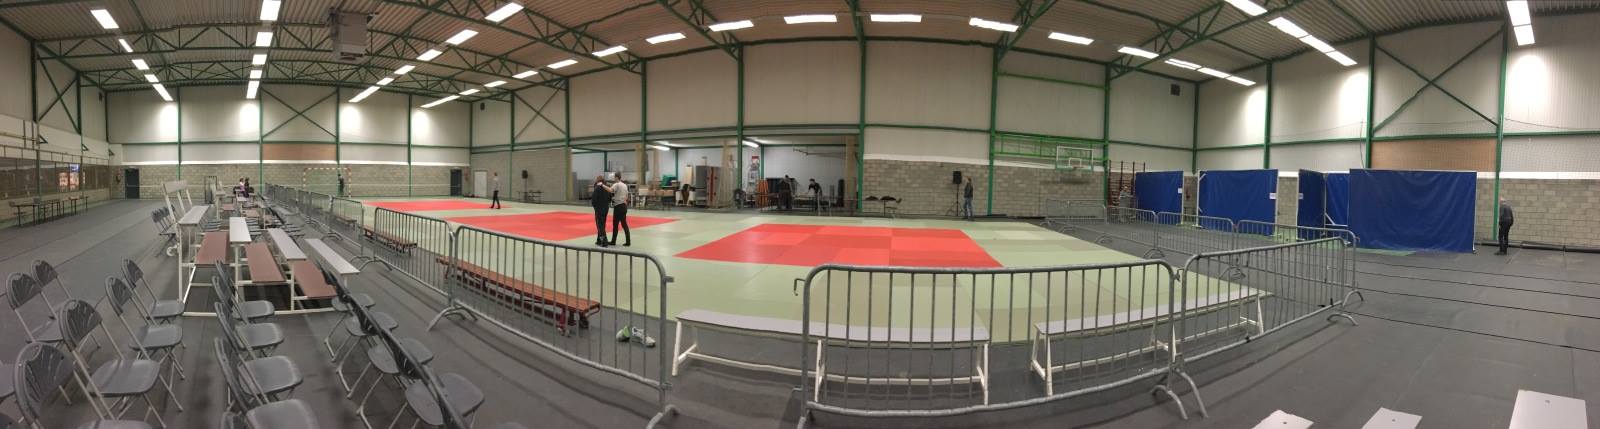 Judoclub Geetbets tornooi u11 en U13 in Rummen